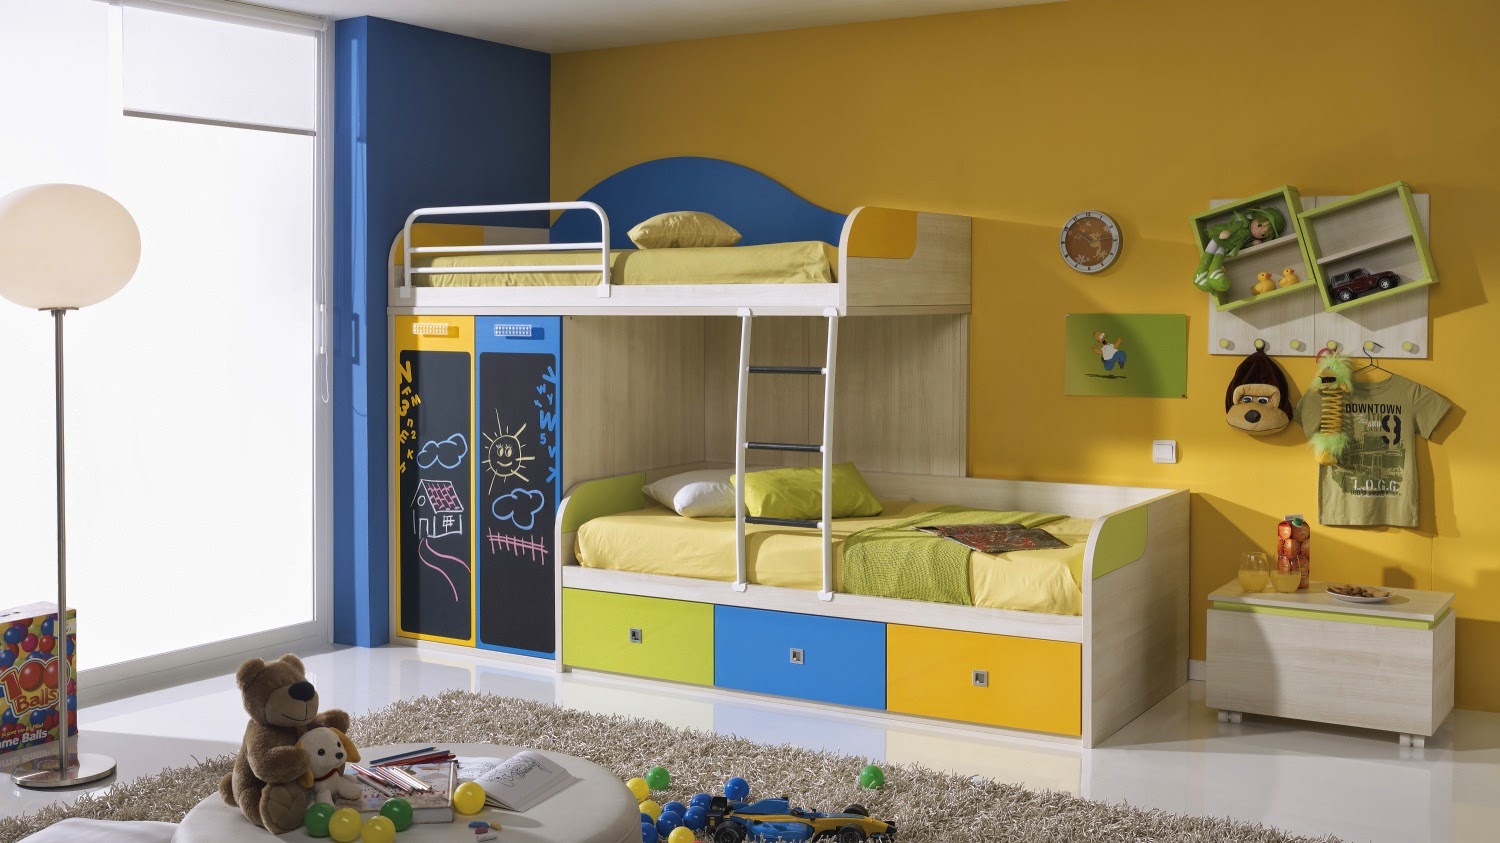 Kids Bunk Beds